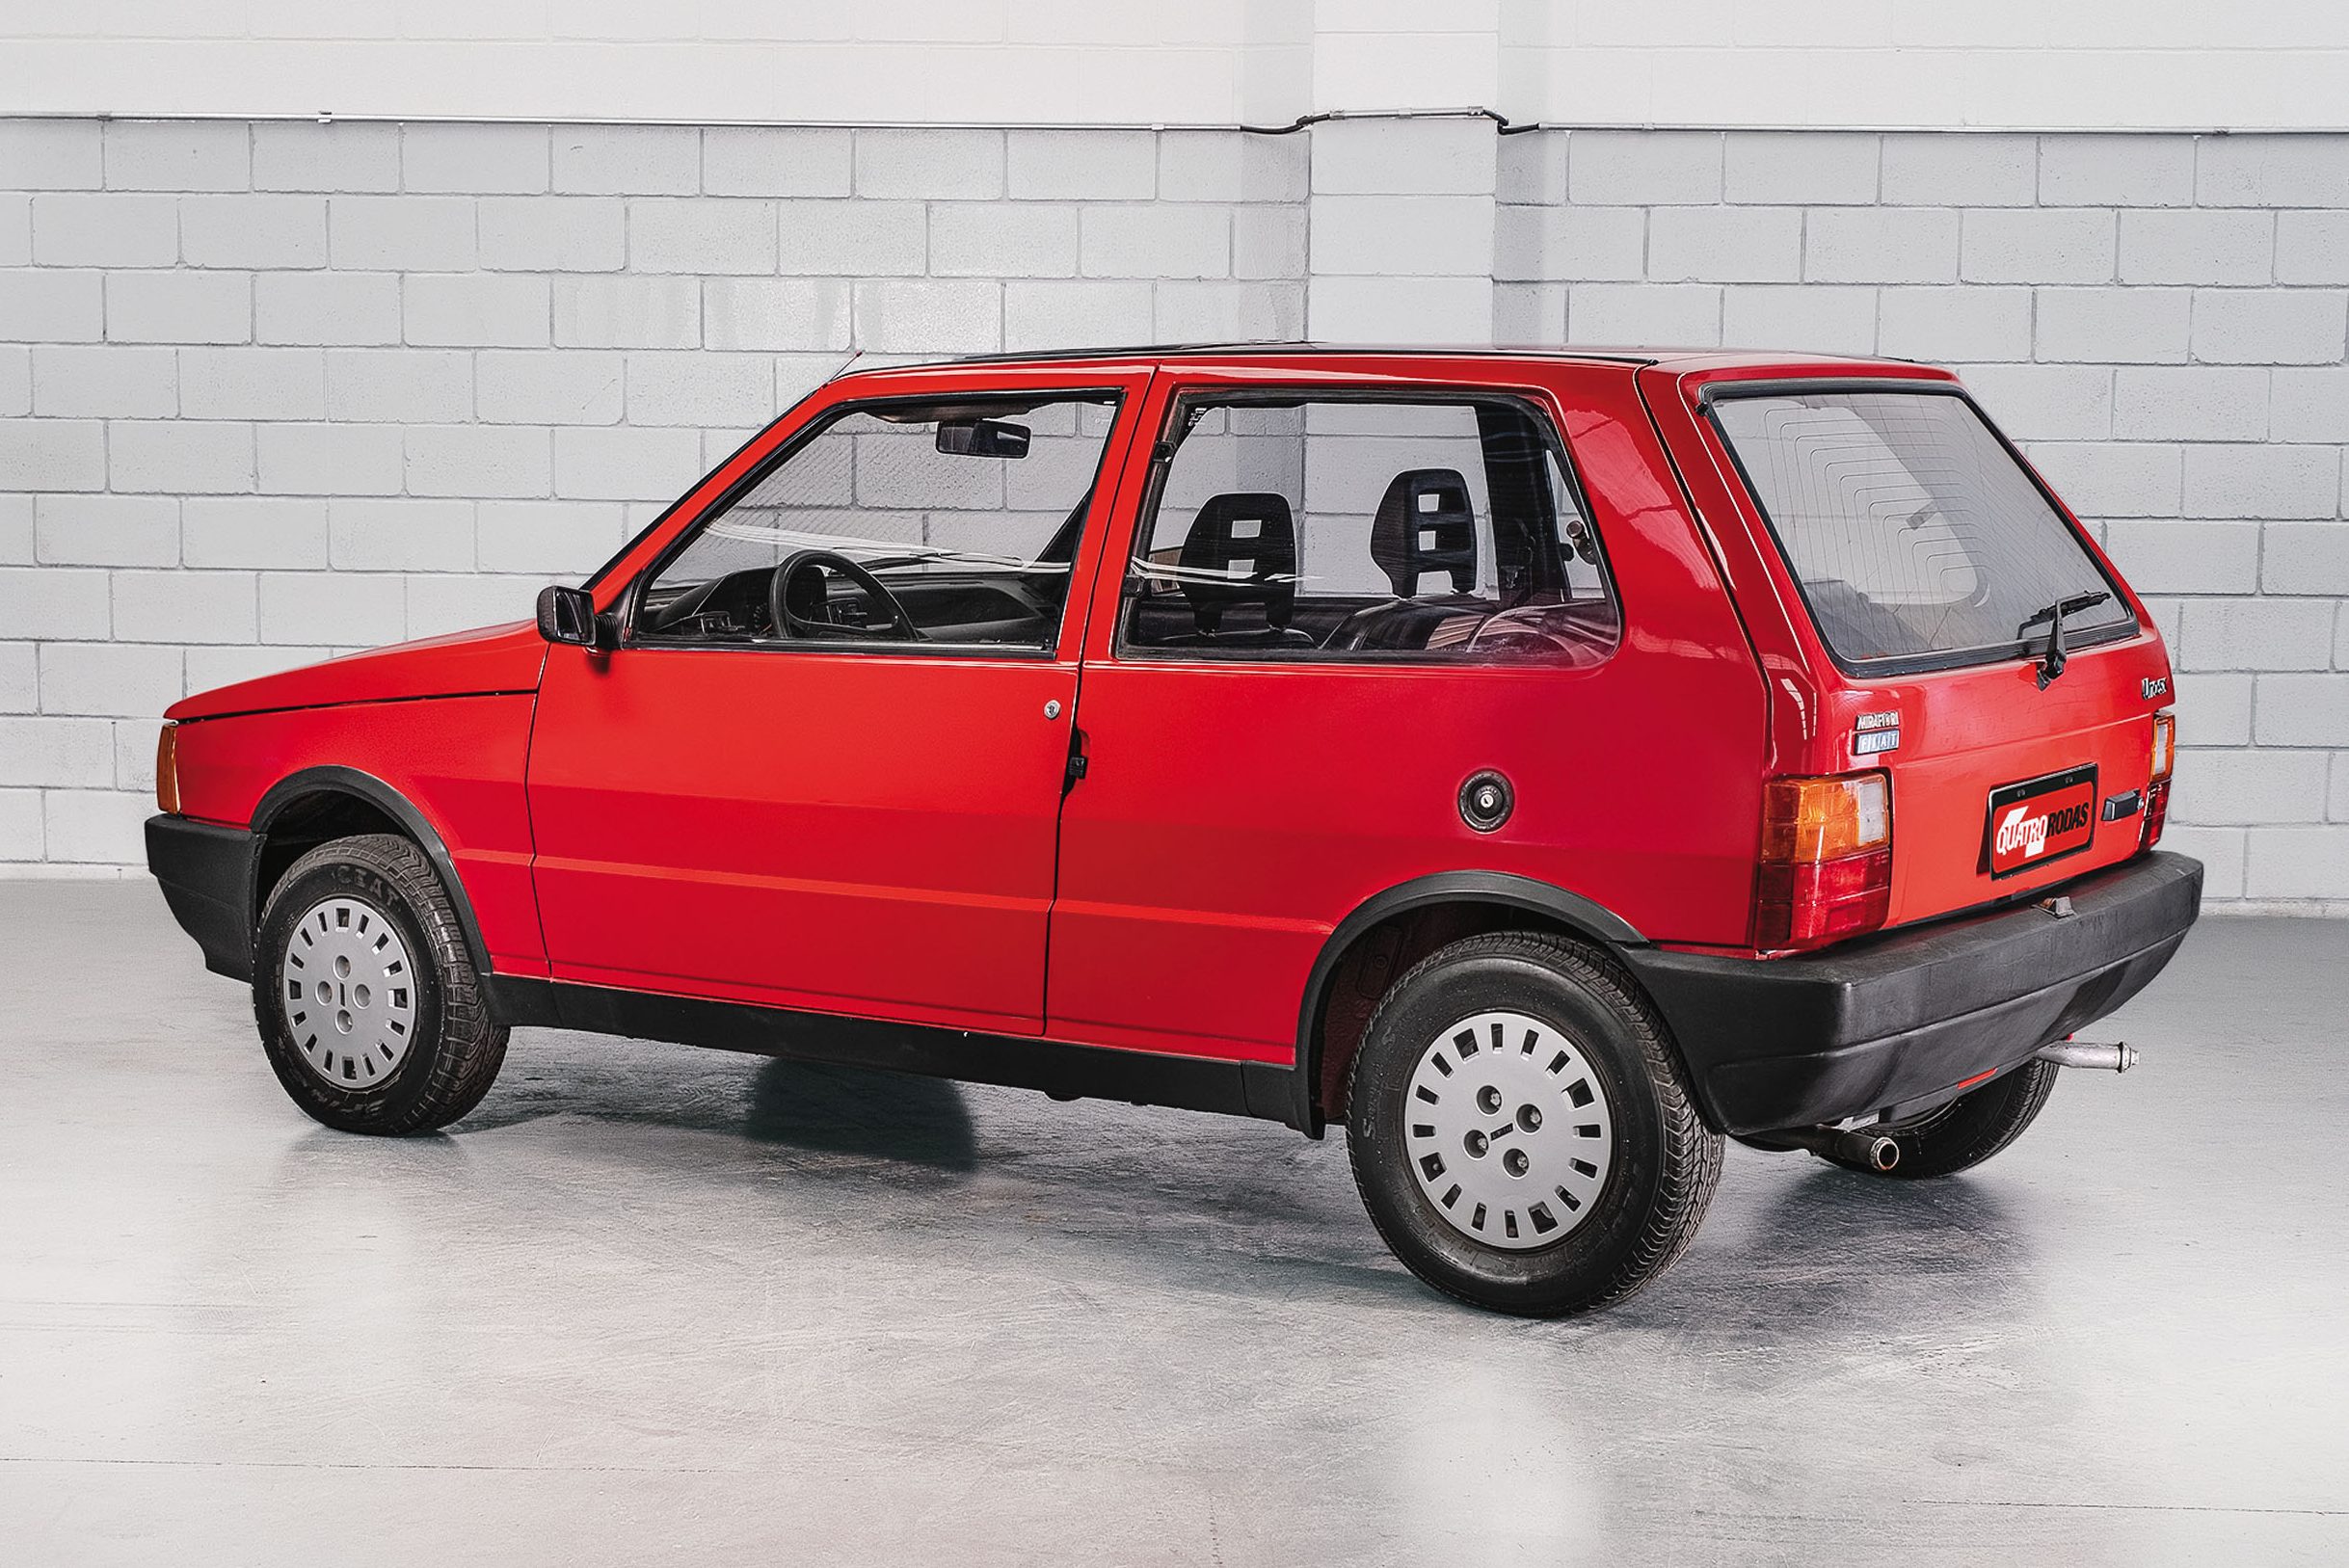 Fiat Uno Way é o hatch aventureiro que mais valorizou no último